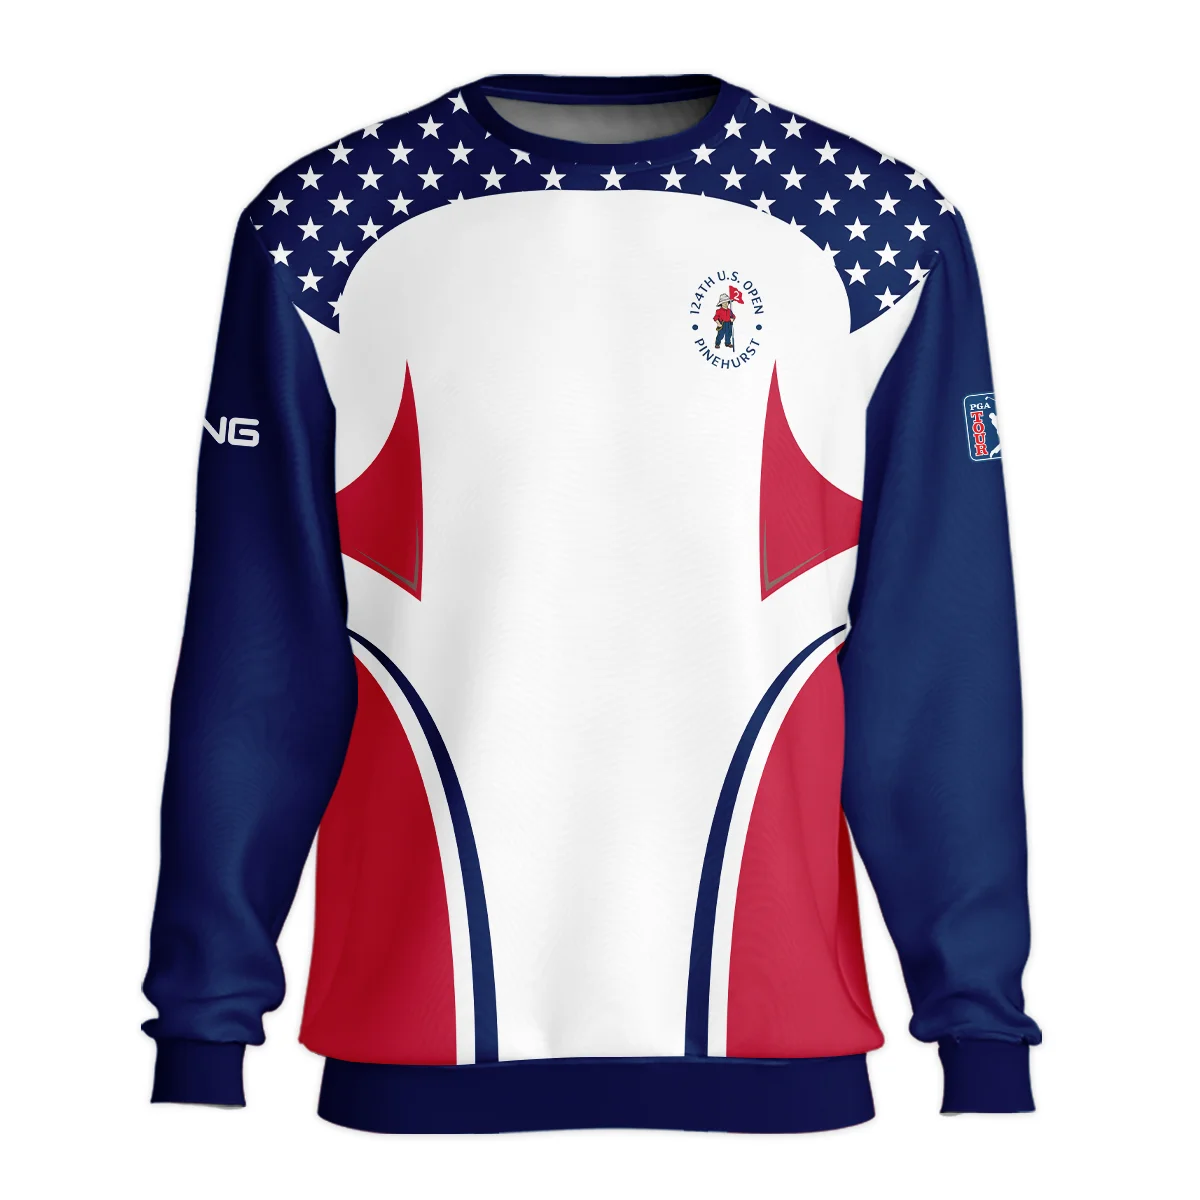 124th U.S. Open Pinehurst Ping Stars White Dark Blue Red Line Unisex Sweatshirt Style Classic Sweatshirt